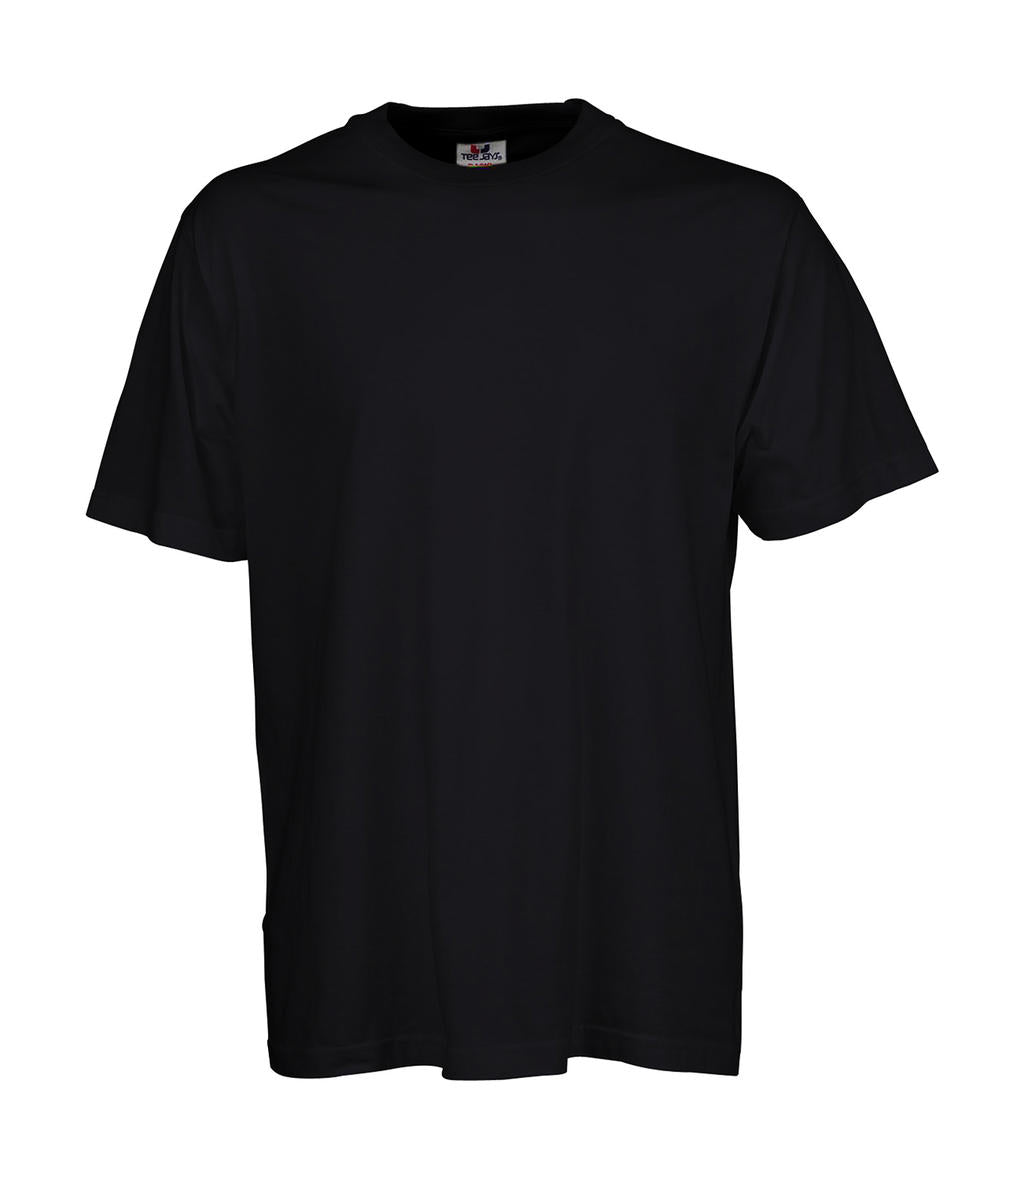 Tee Jays Herren T-Shirt Basic Rundhalsshirt Tee Shirt TShirt Kurzarm